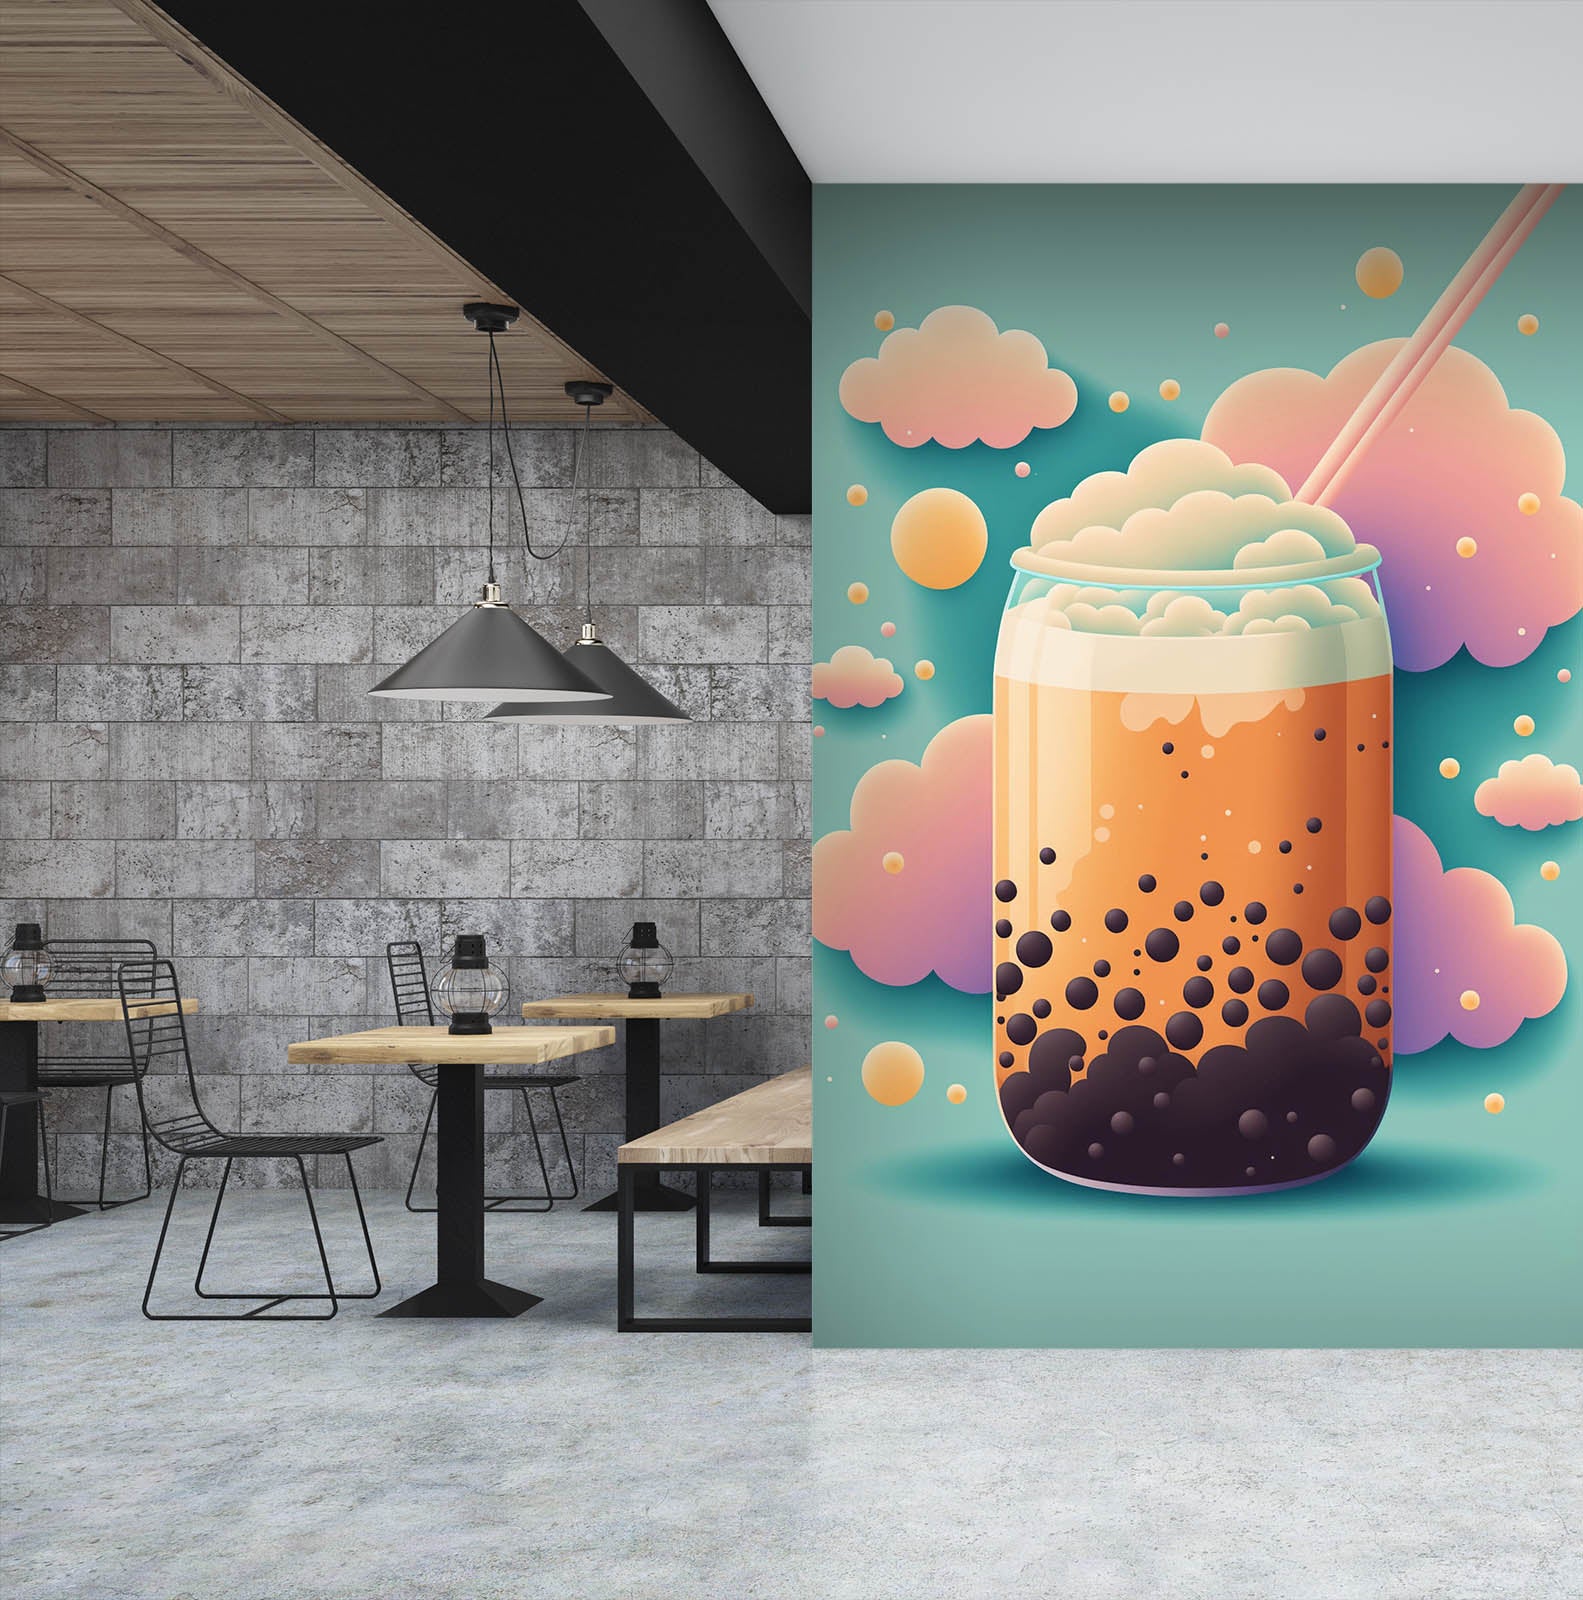 3D Pearl Tea 2114 Fruit Bubble Tea Milk Tea Shop Wall Murals